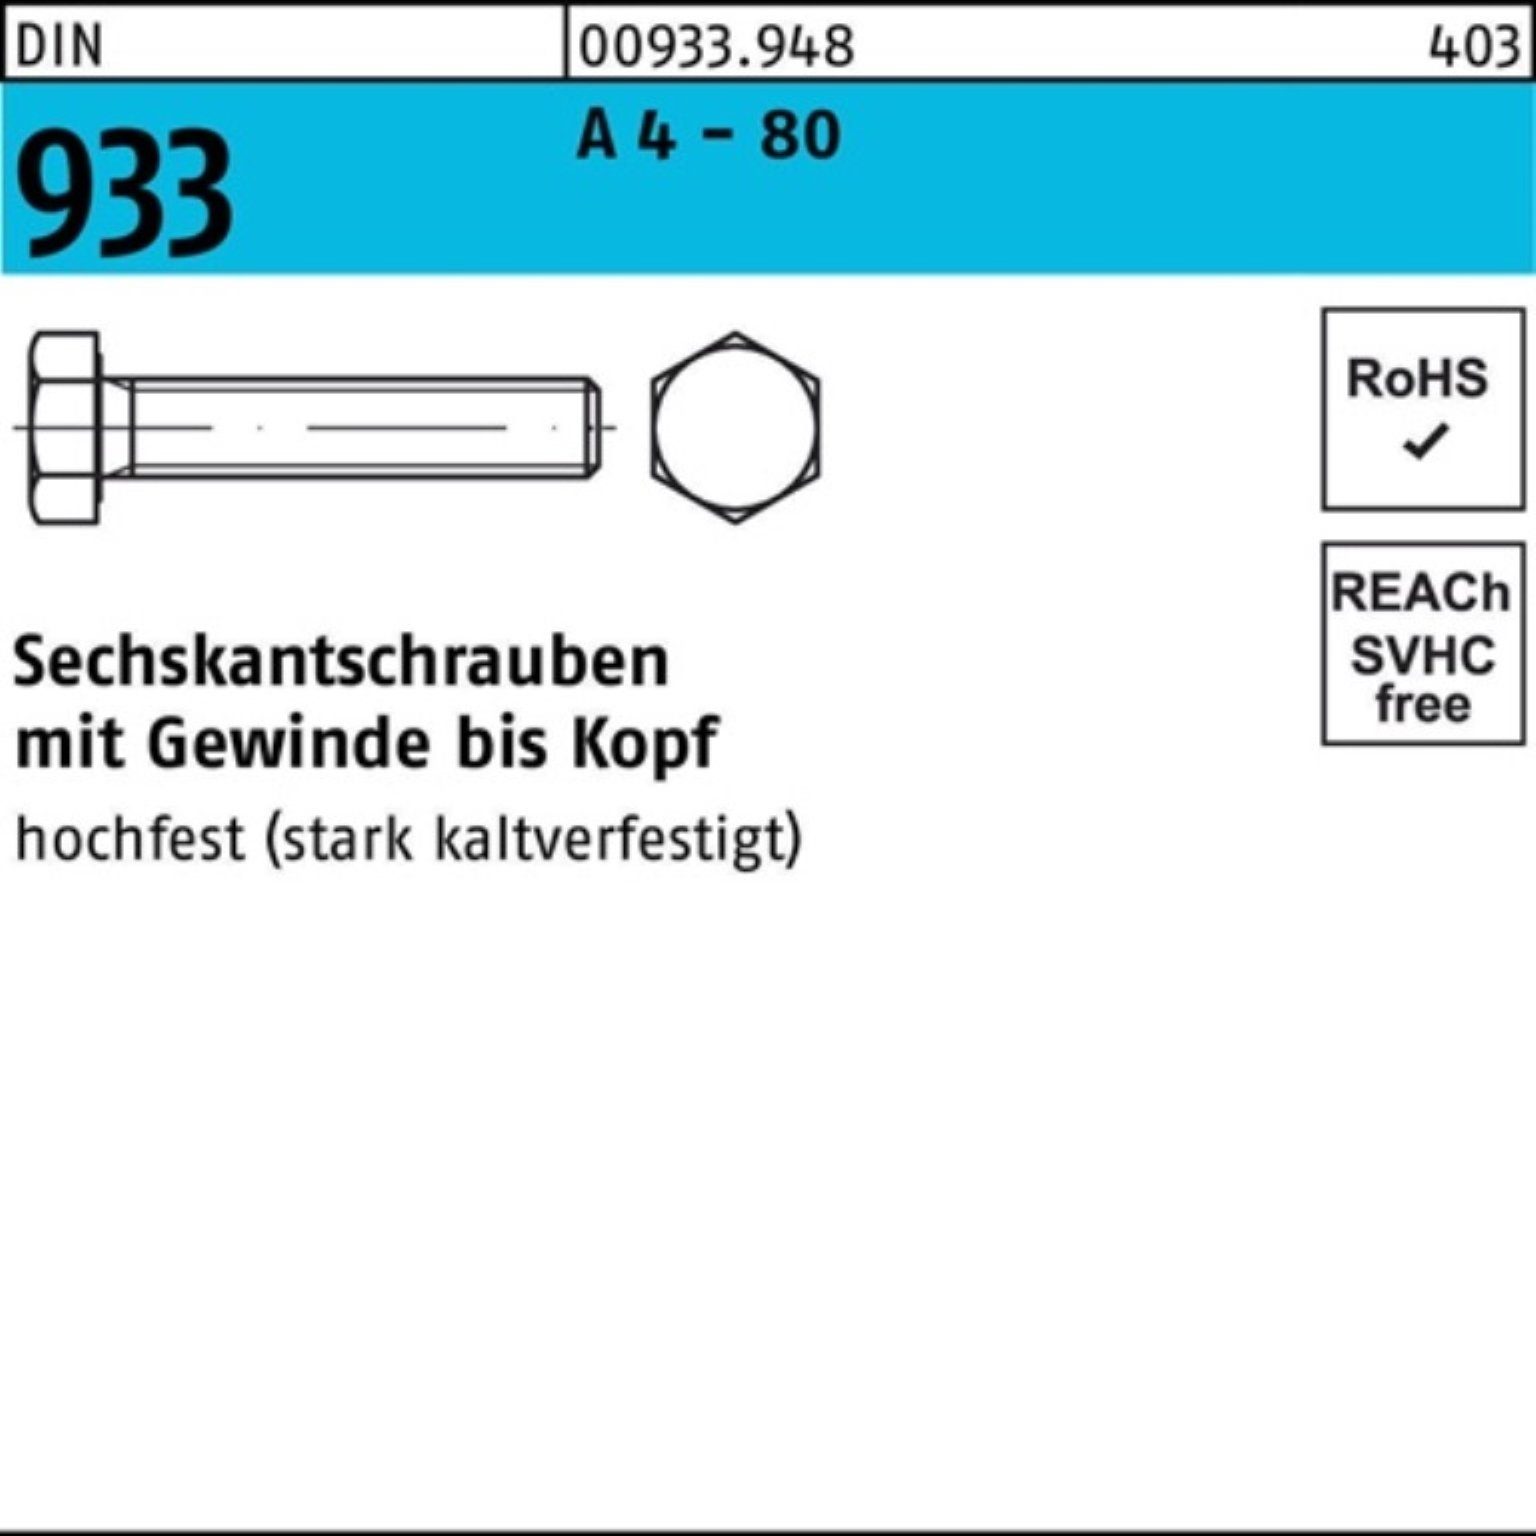 Reyher Sechskantschraube 100er Pack Sechskantschraube DIN 933 VG M8x 30 A 4 - 80 100 Stück DIN